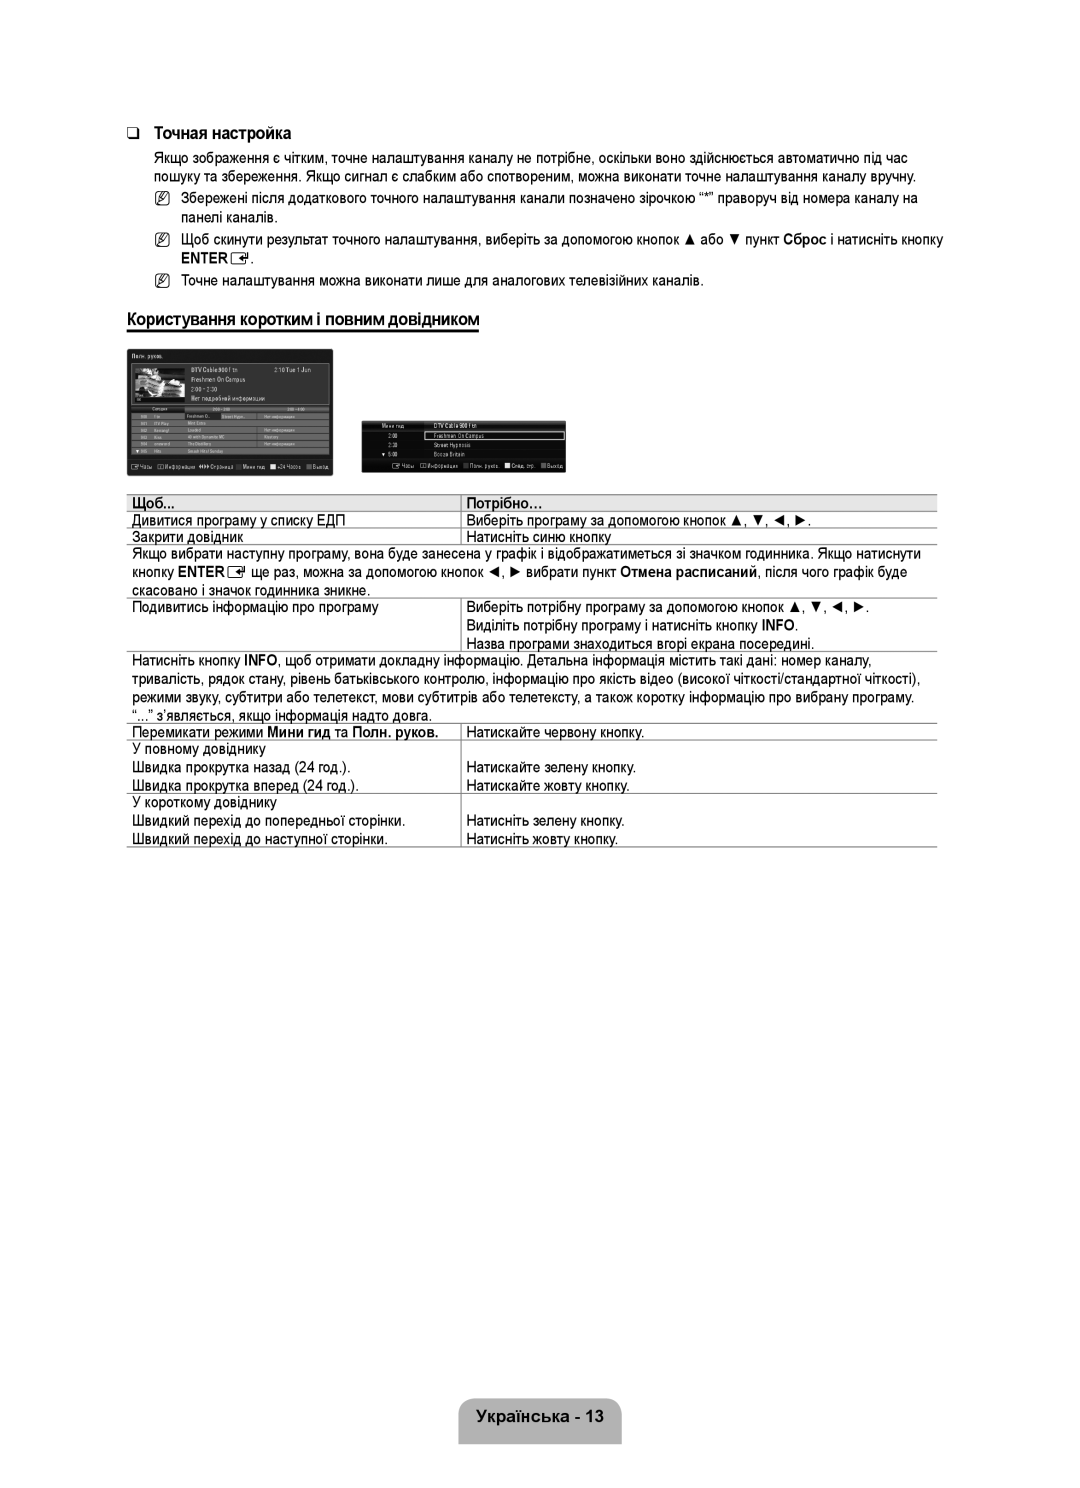 Samsung UE46B6000VWXZG manual Користування коротким і повним довідником, Потрібно…, Точная настройка, Українська, Entere 